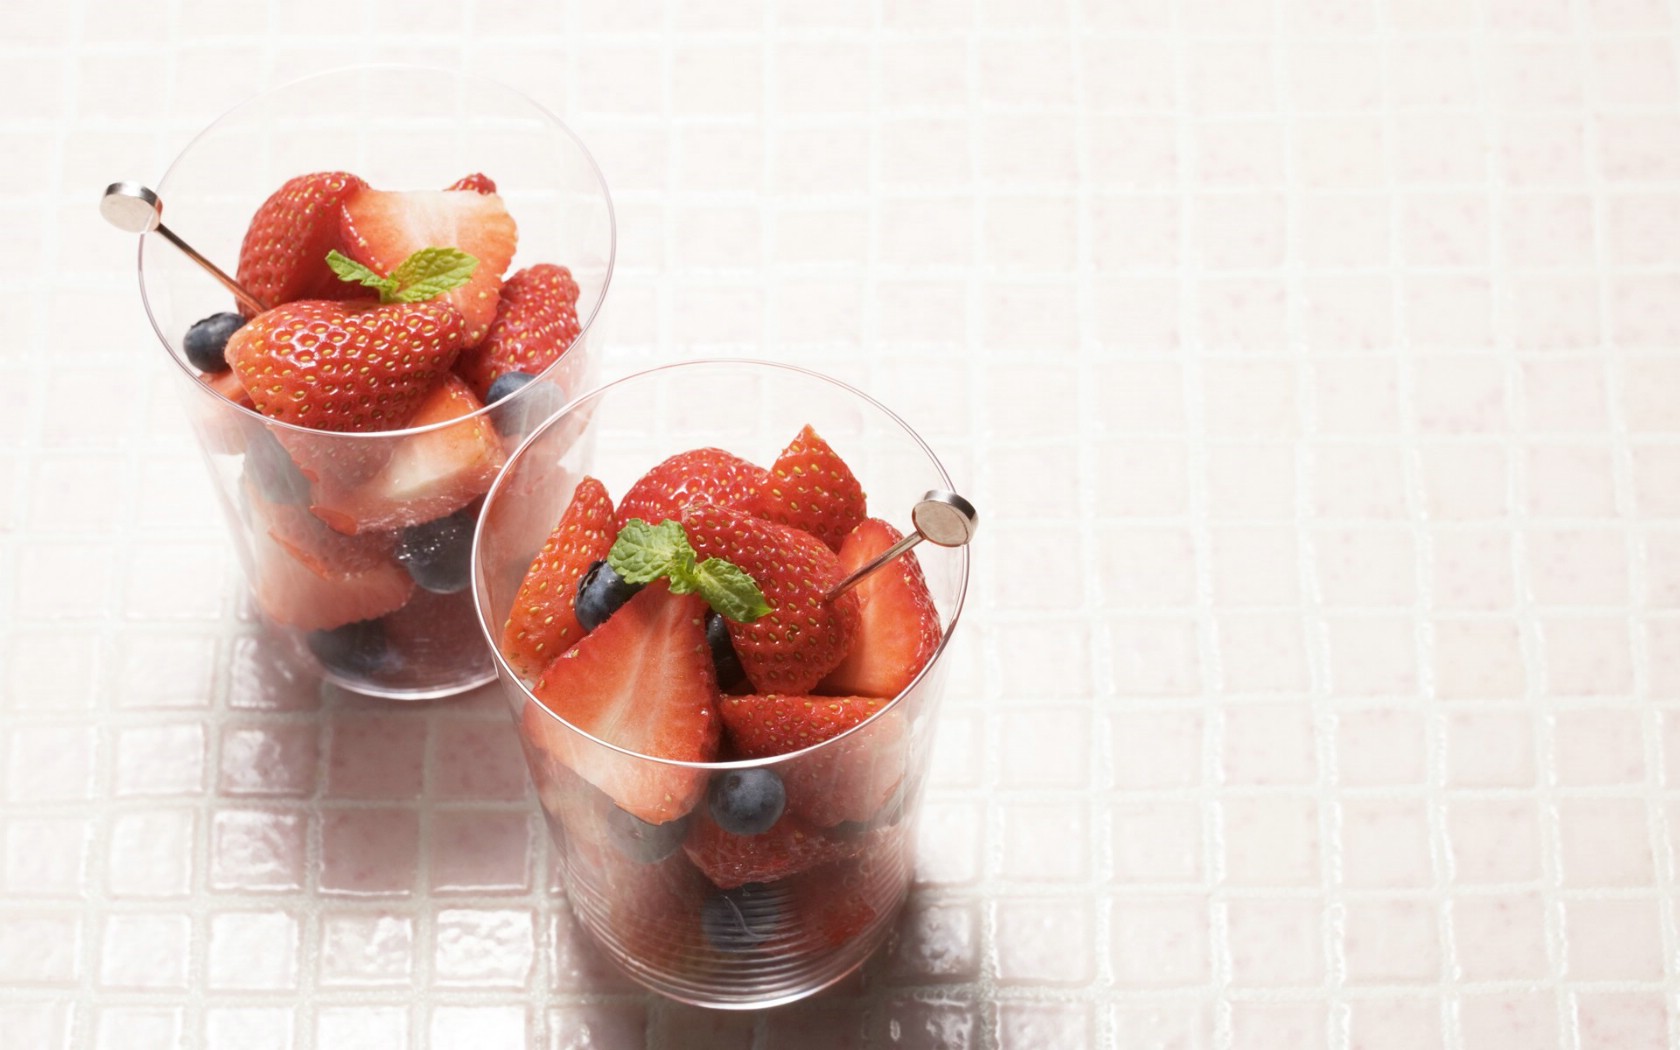 壁纸1680x1050餐桌 [33P] 草莓水果杯 水果甜点图片壁纸 水果甜点摄影(二)壁纸 水果甜点摄影(二)图片 水果甜点摄影(二)素材 摄影壁纸 摄影图库 摄影图片素材桌面壁纸